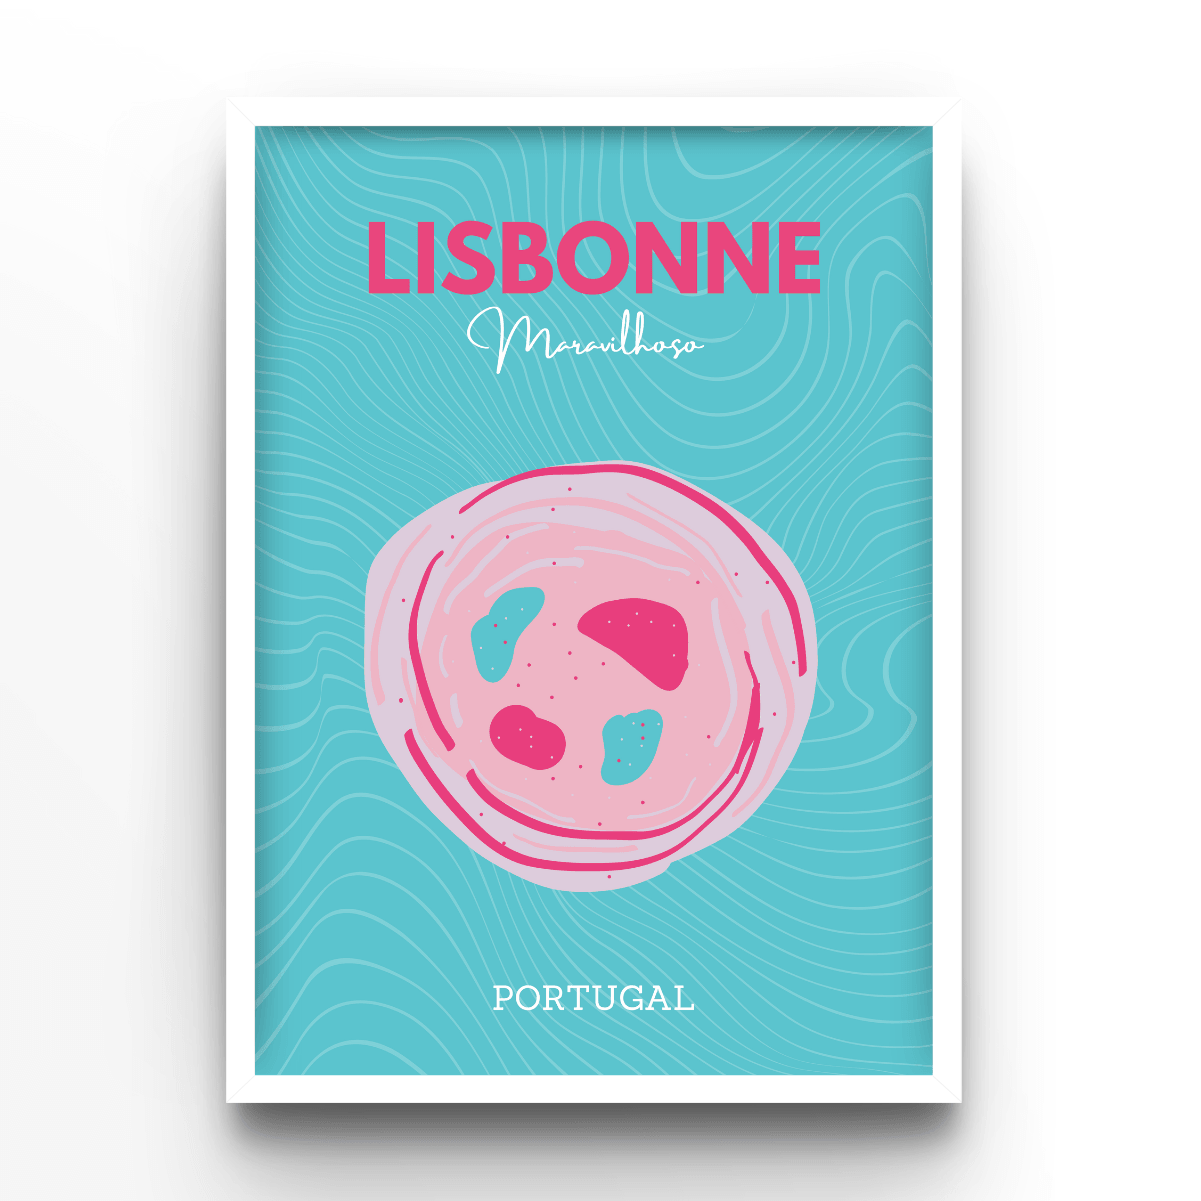 Lisbonne - A4, A3, A2 Posters Base - Poster Print Shop / Art Prints / PostersBase